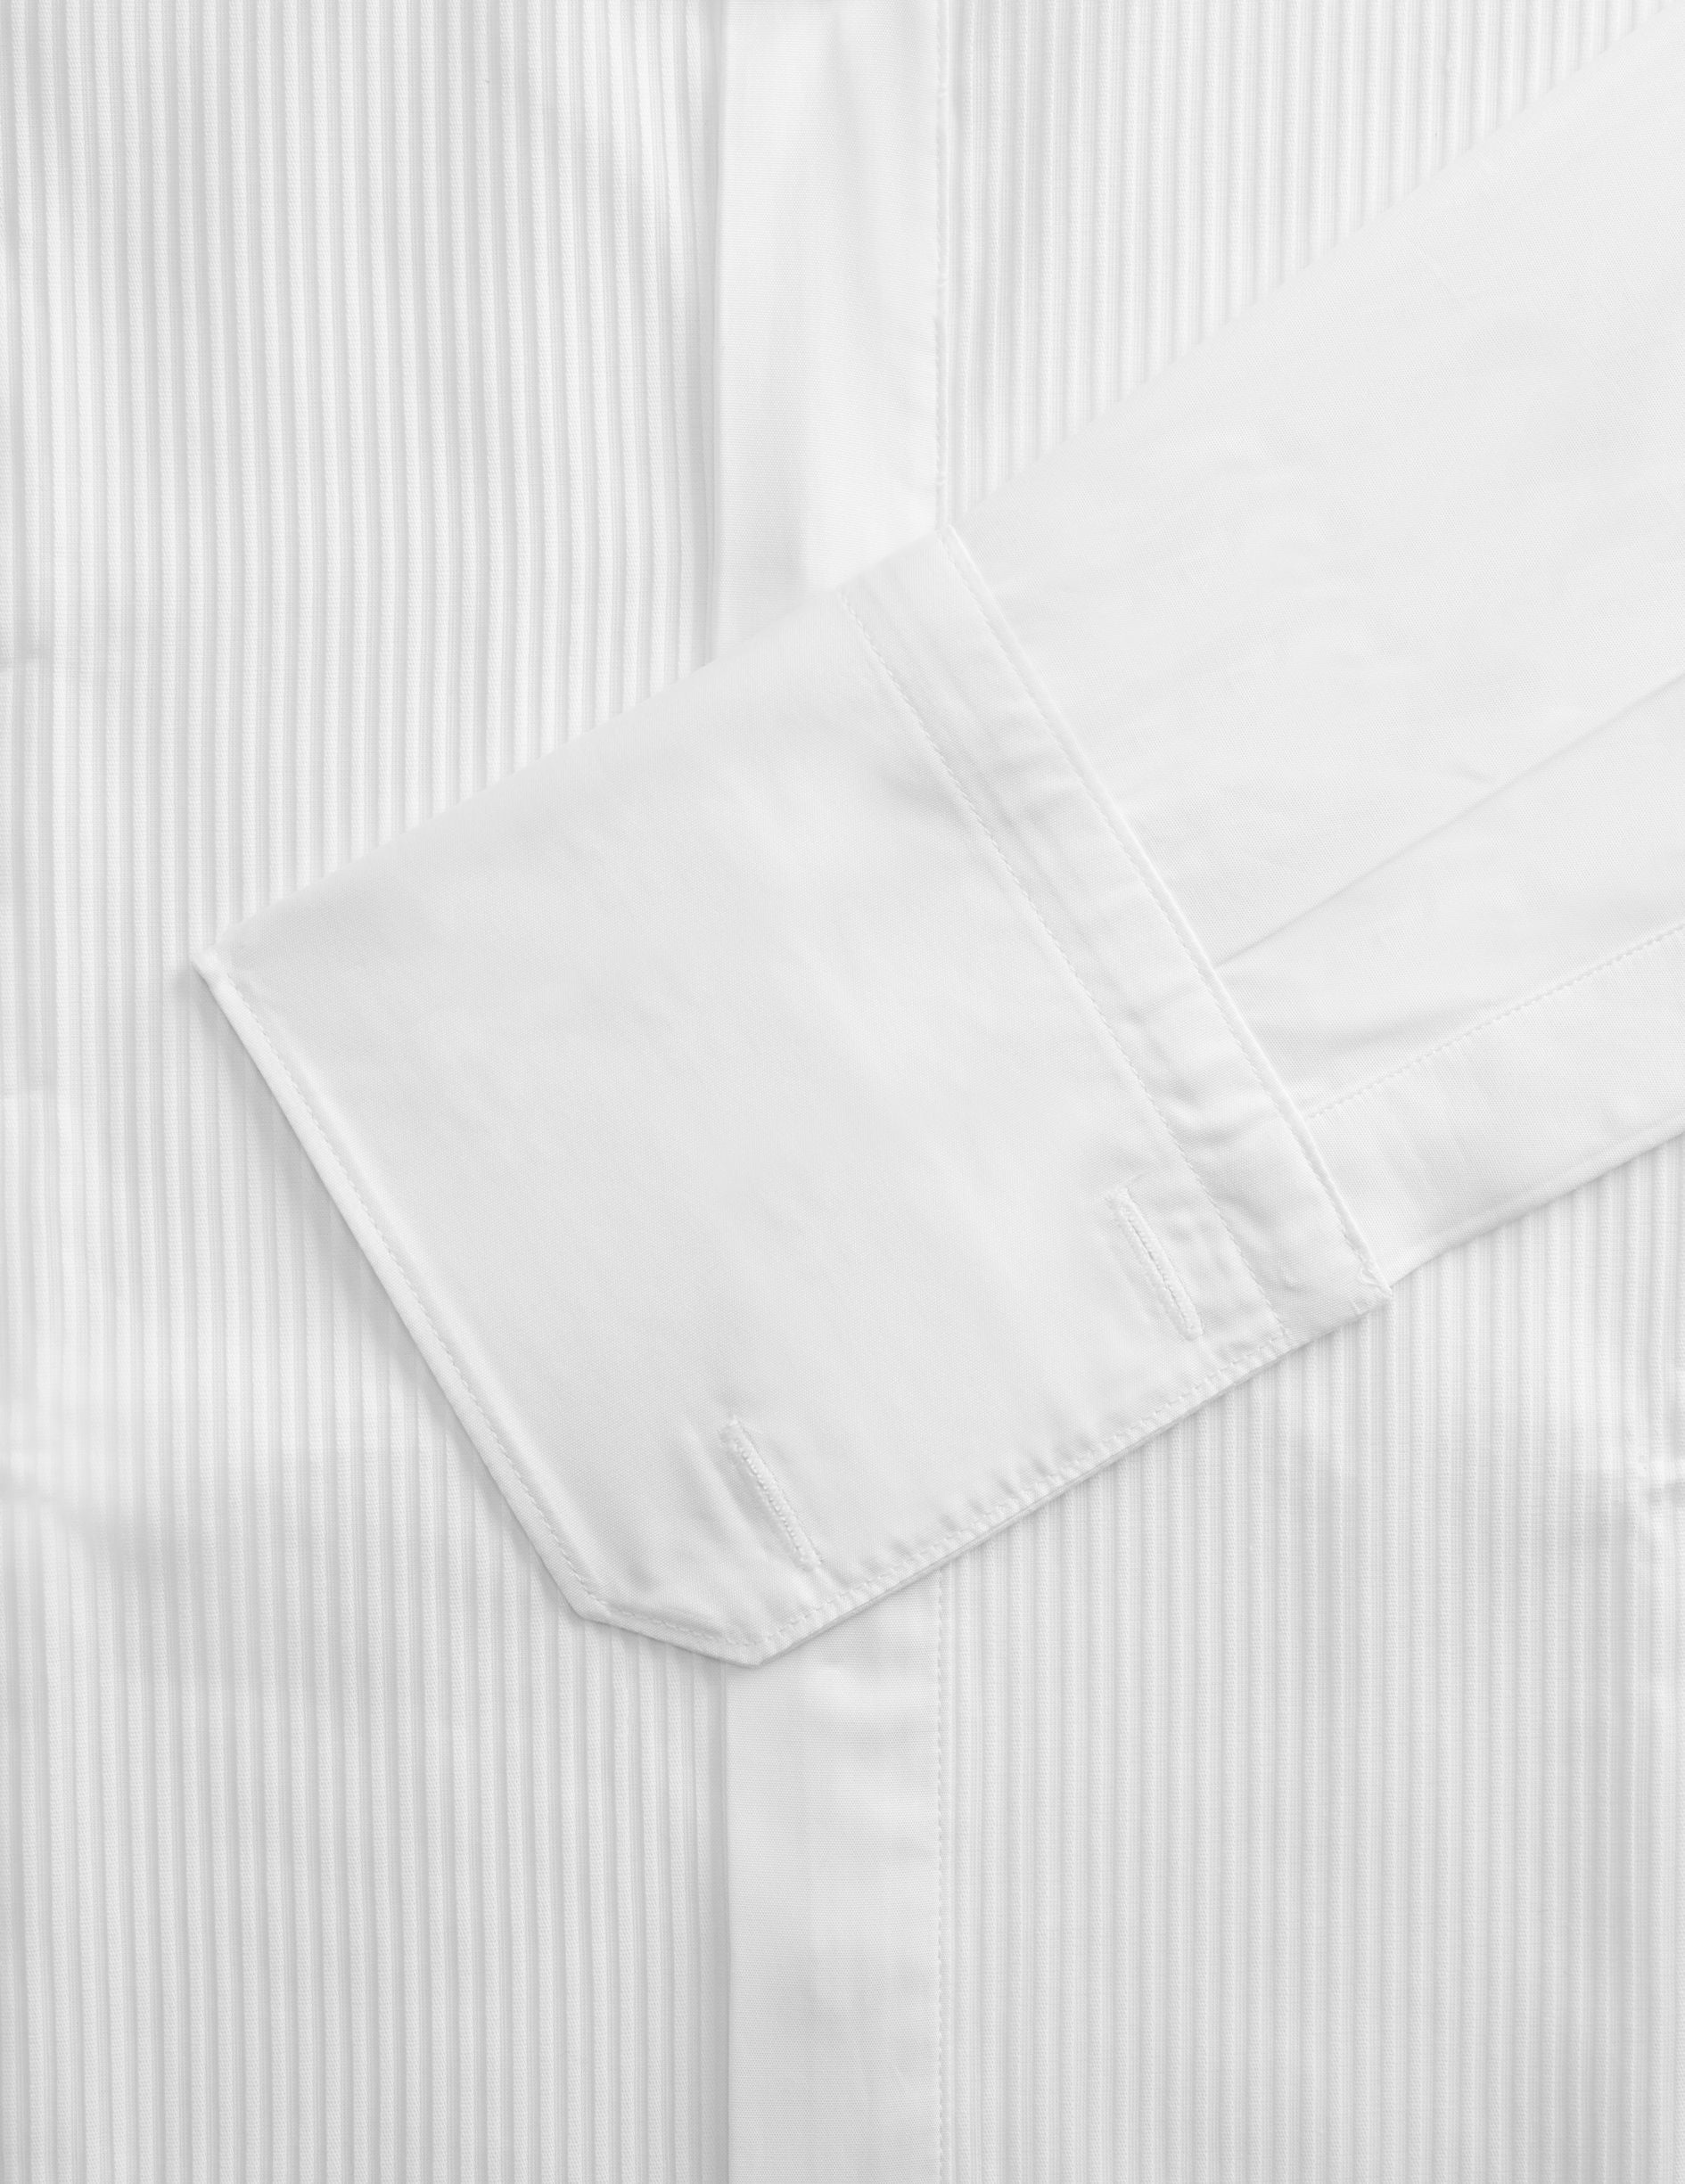 Chemise Semi-ajustée gorge cachée blanche - Popeline - Col Cassé - Poignets Mousquetaires